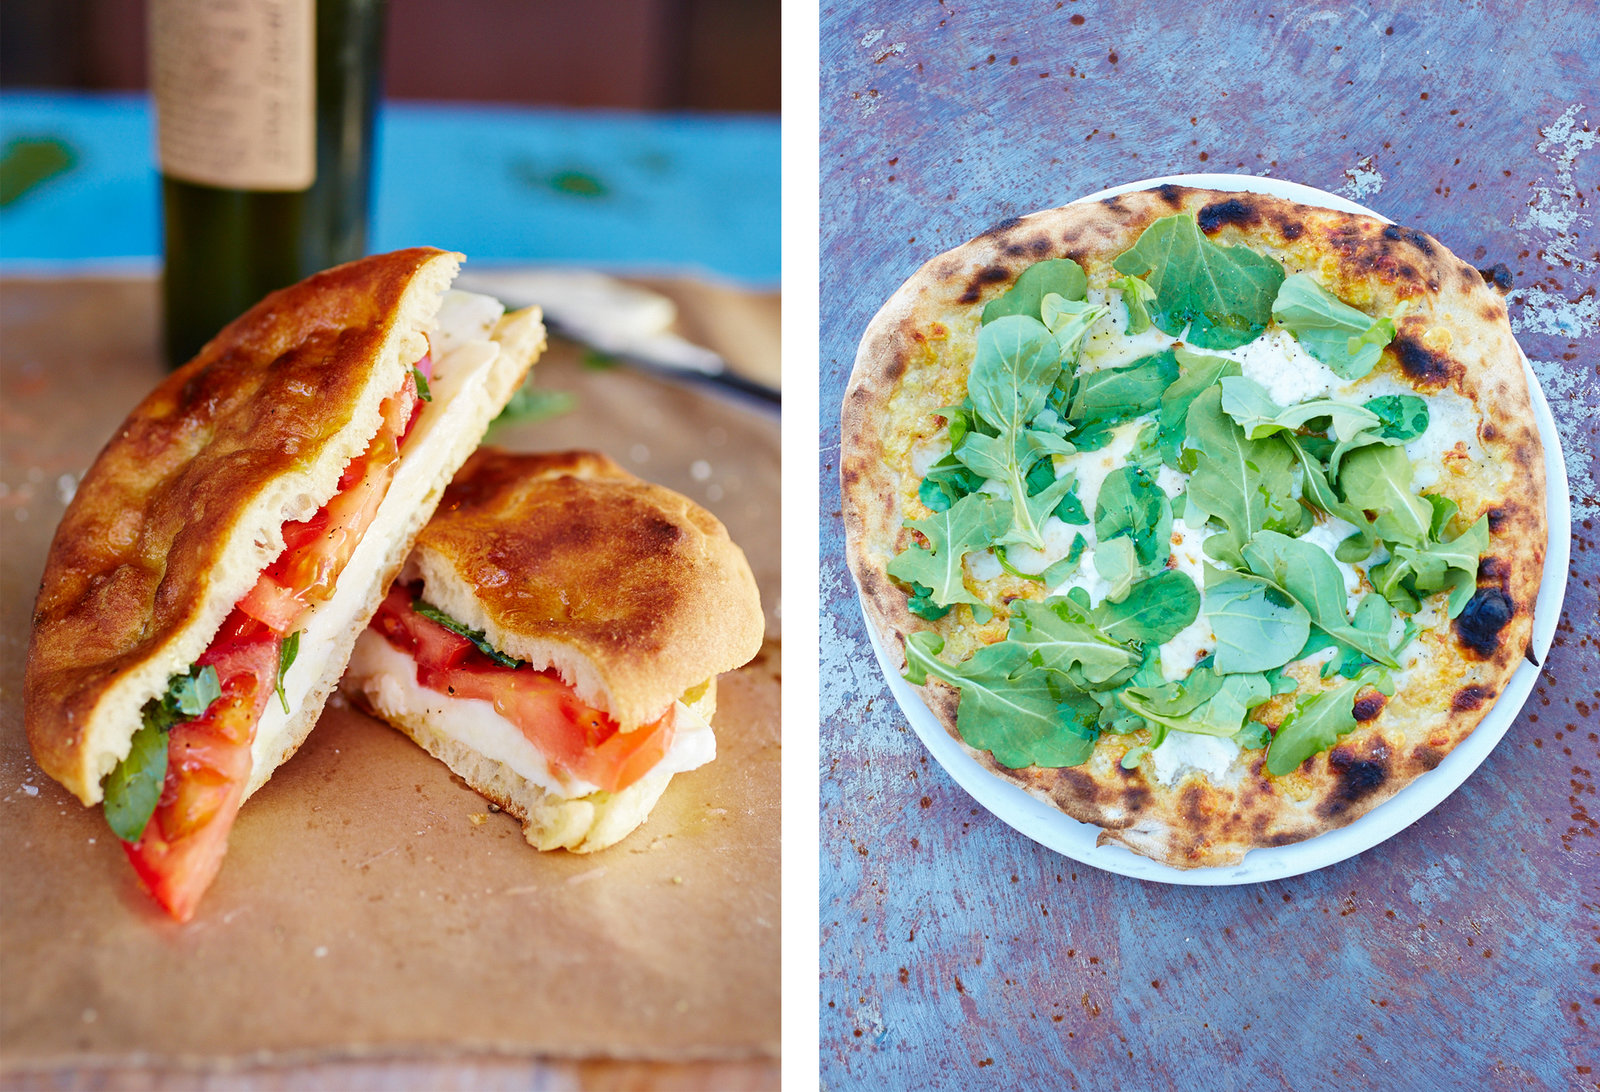 Left: mozzarella and tomato sandwich. Right: pizza biancoverde.